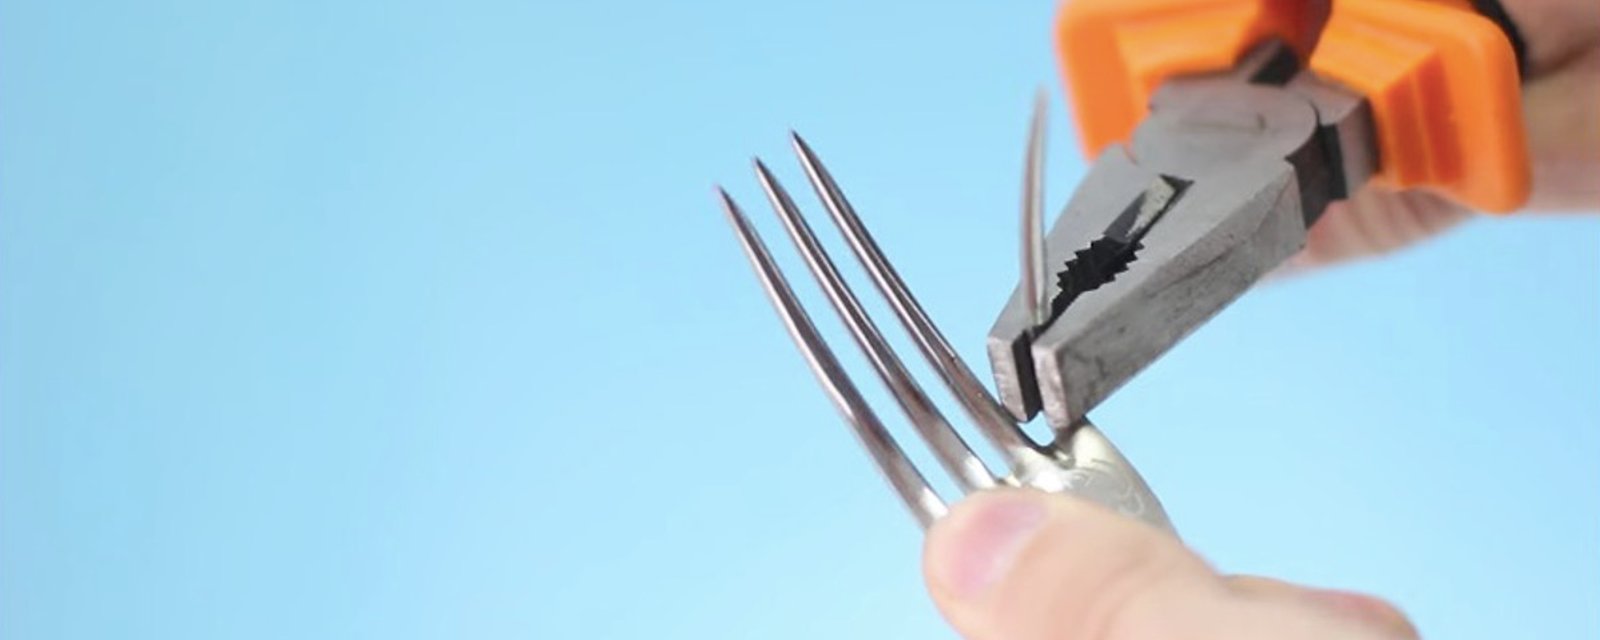 Avec une paire de pince, crochissez les dents d'une fourchette afin de réaliser l'une de ces 6 brillantes idées! 